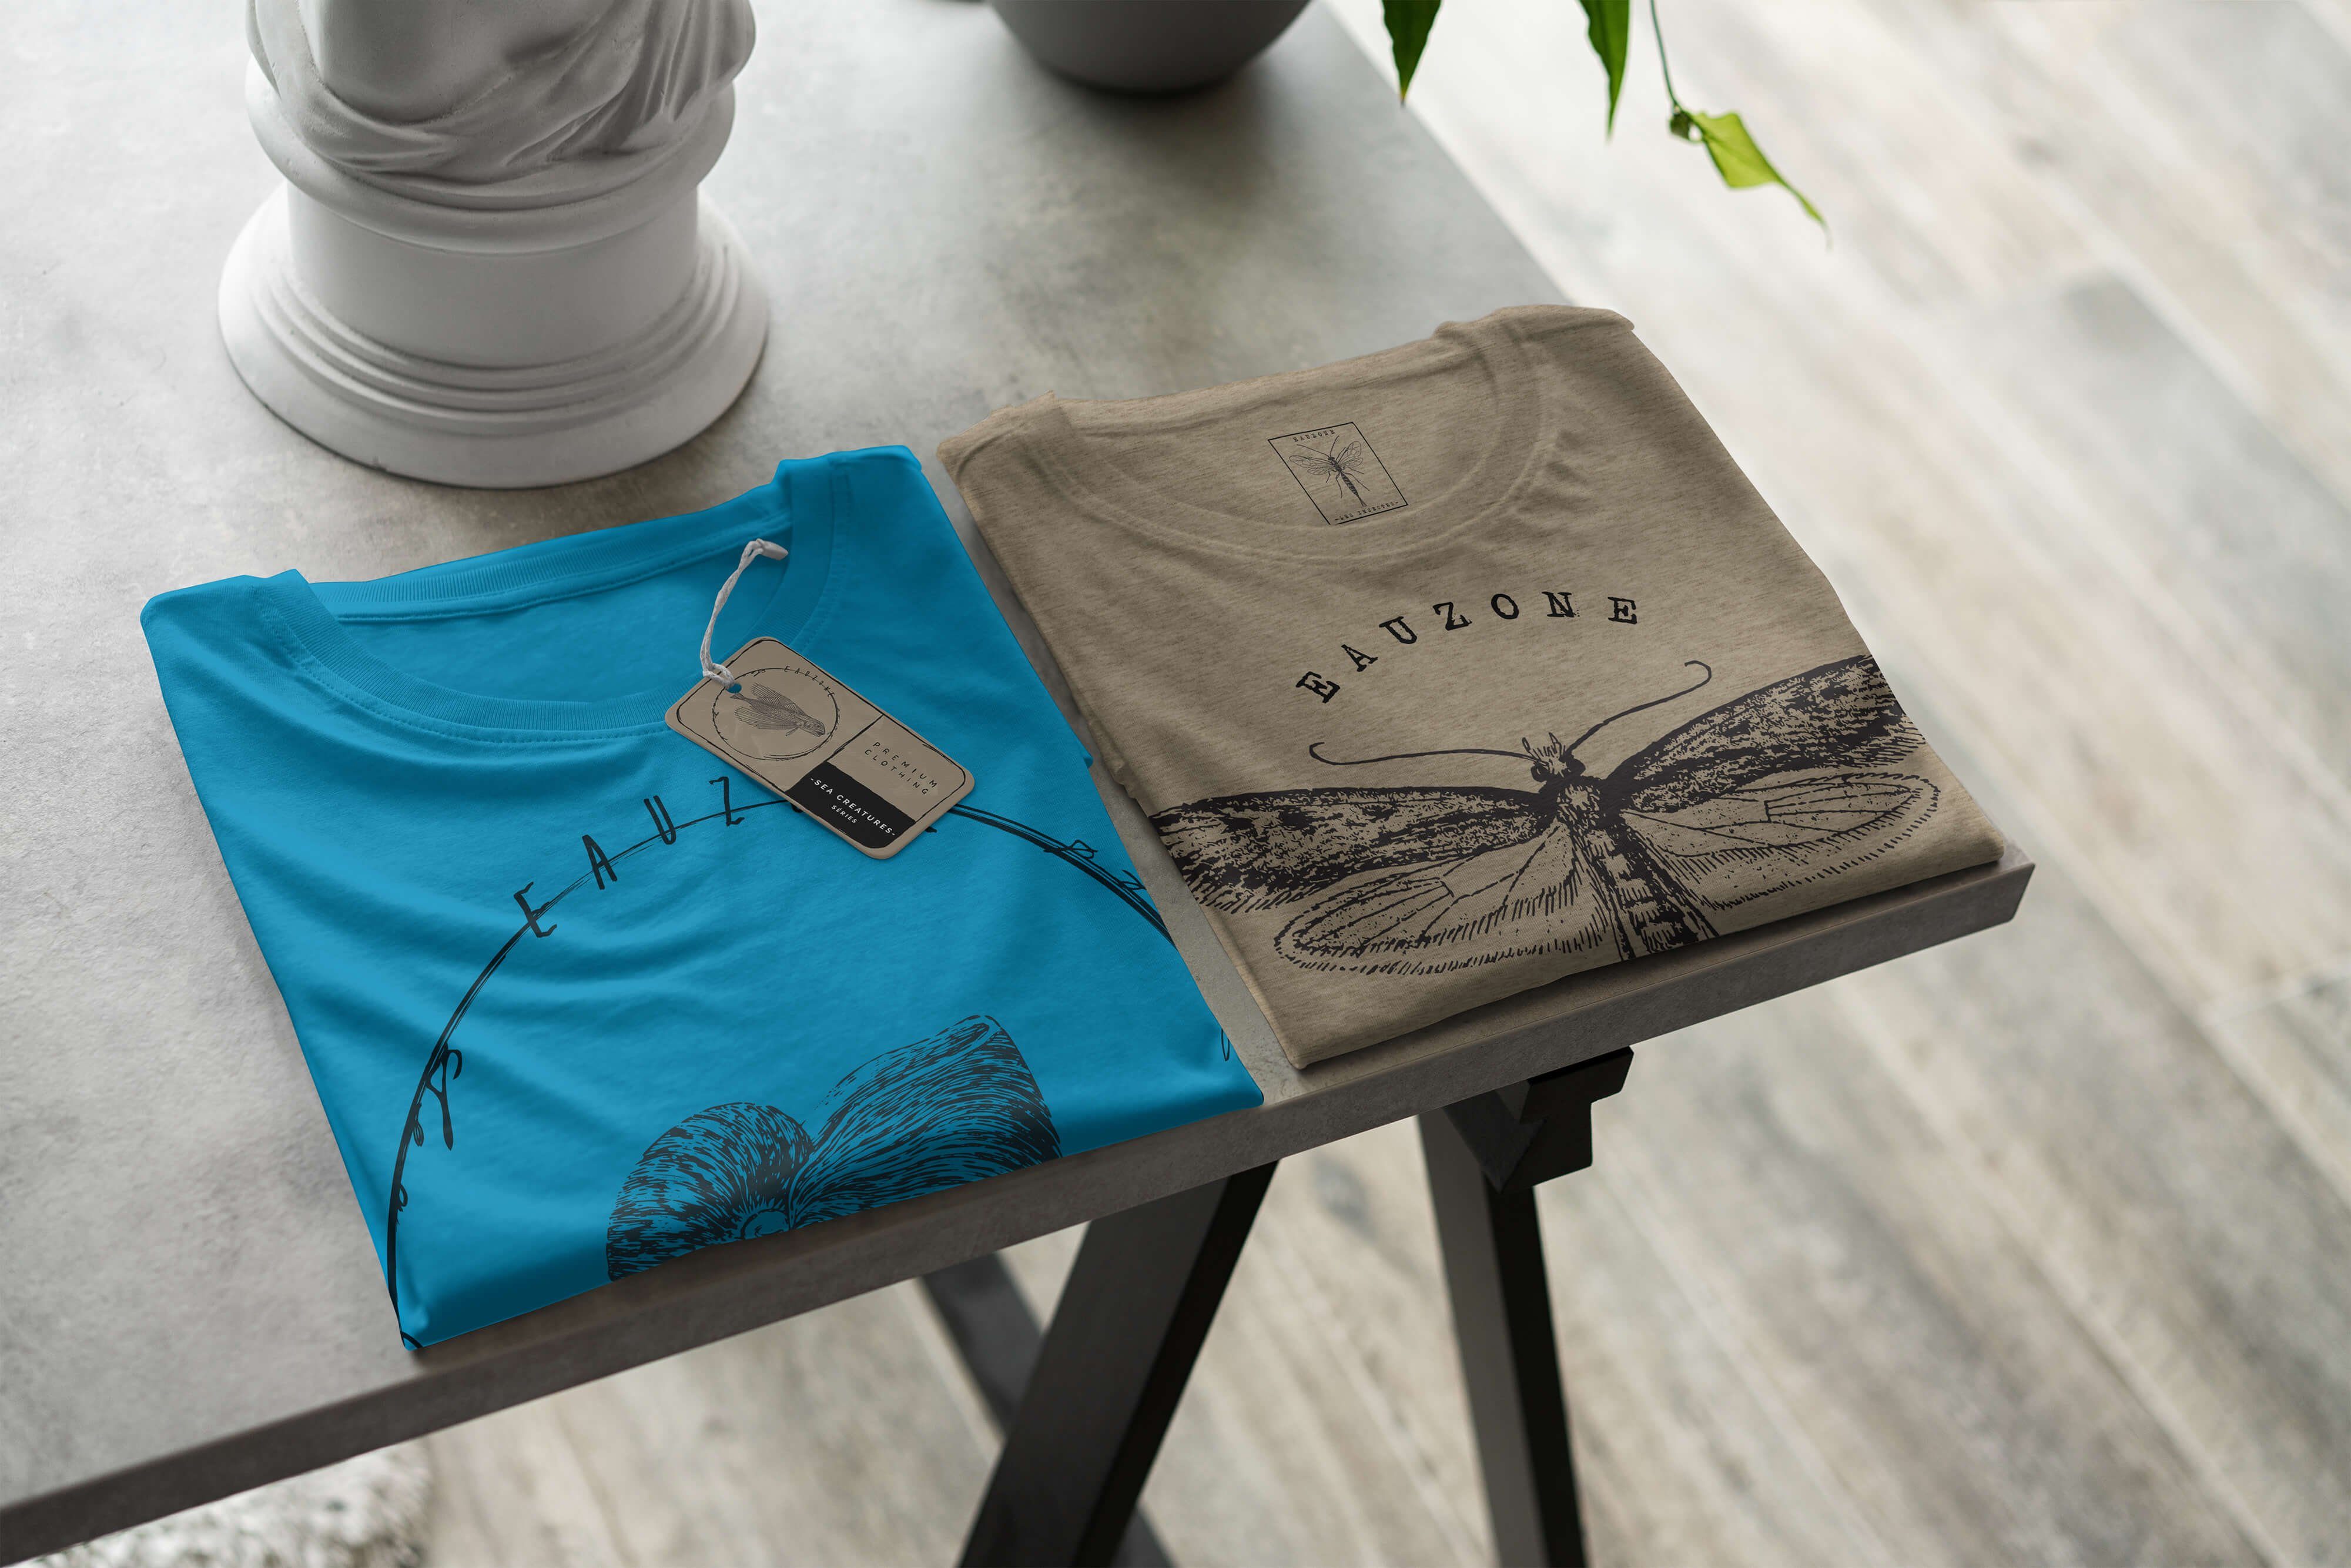 Sinus Art T-Shirt T-Shirt Schnitt 049 - Sea Serie: Atoll Struktur sportlicher / und Fische Creatures, feine Sea Tiefsee